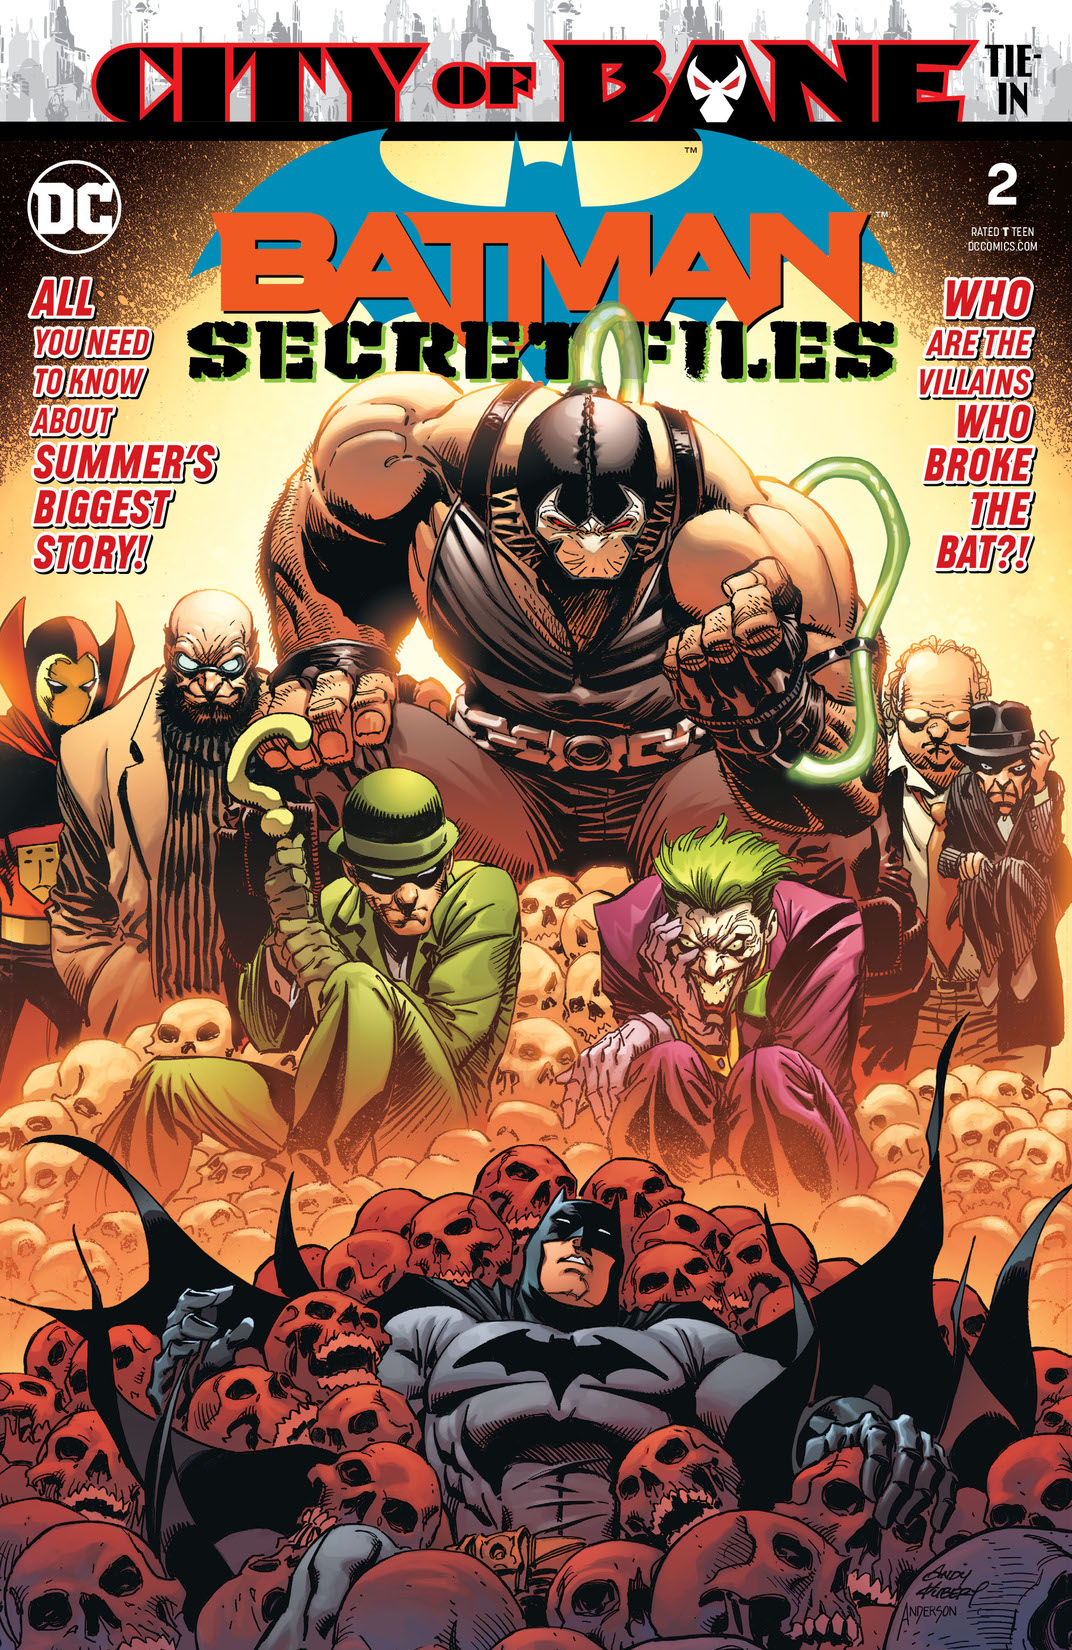 Batman Secret Files (2018-) #2 preview images